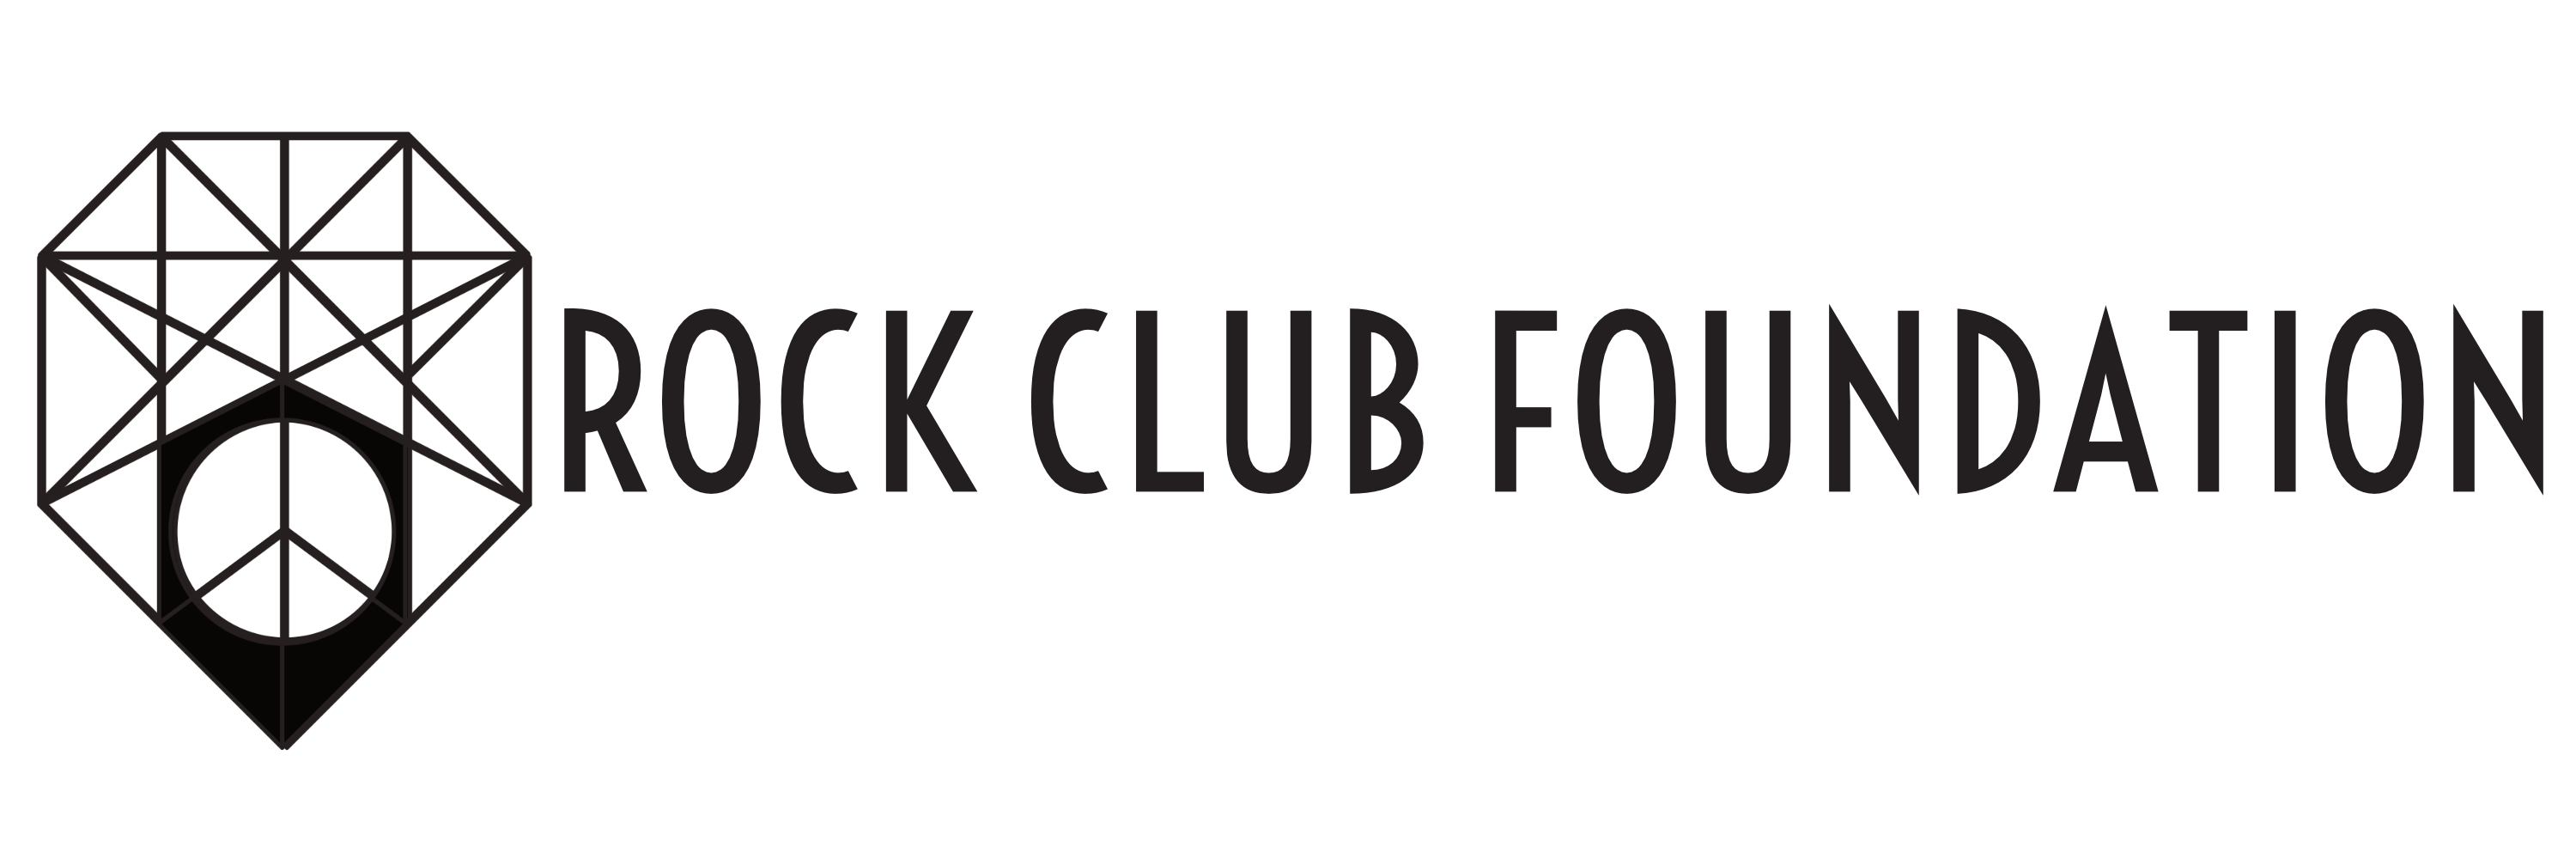 Rock Club Foundation logo